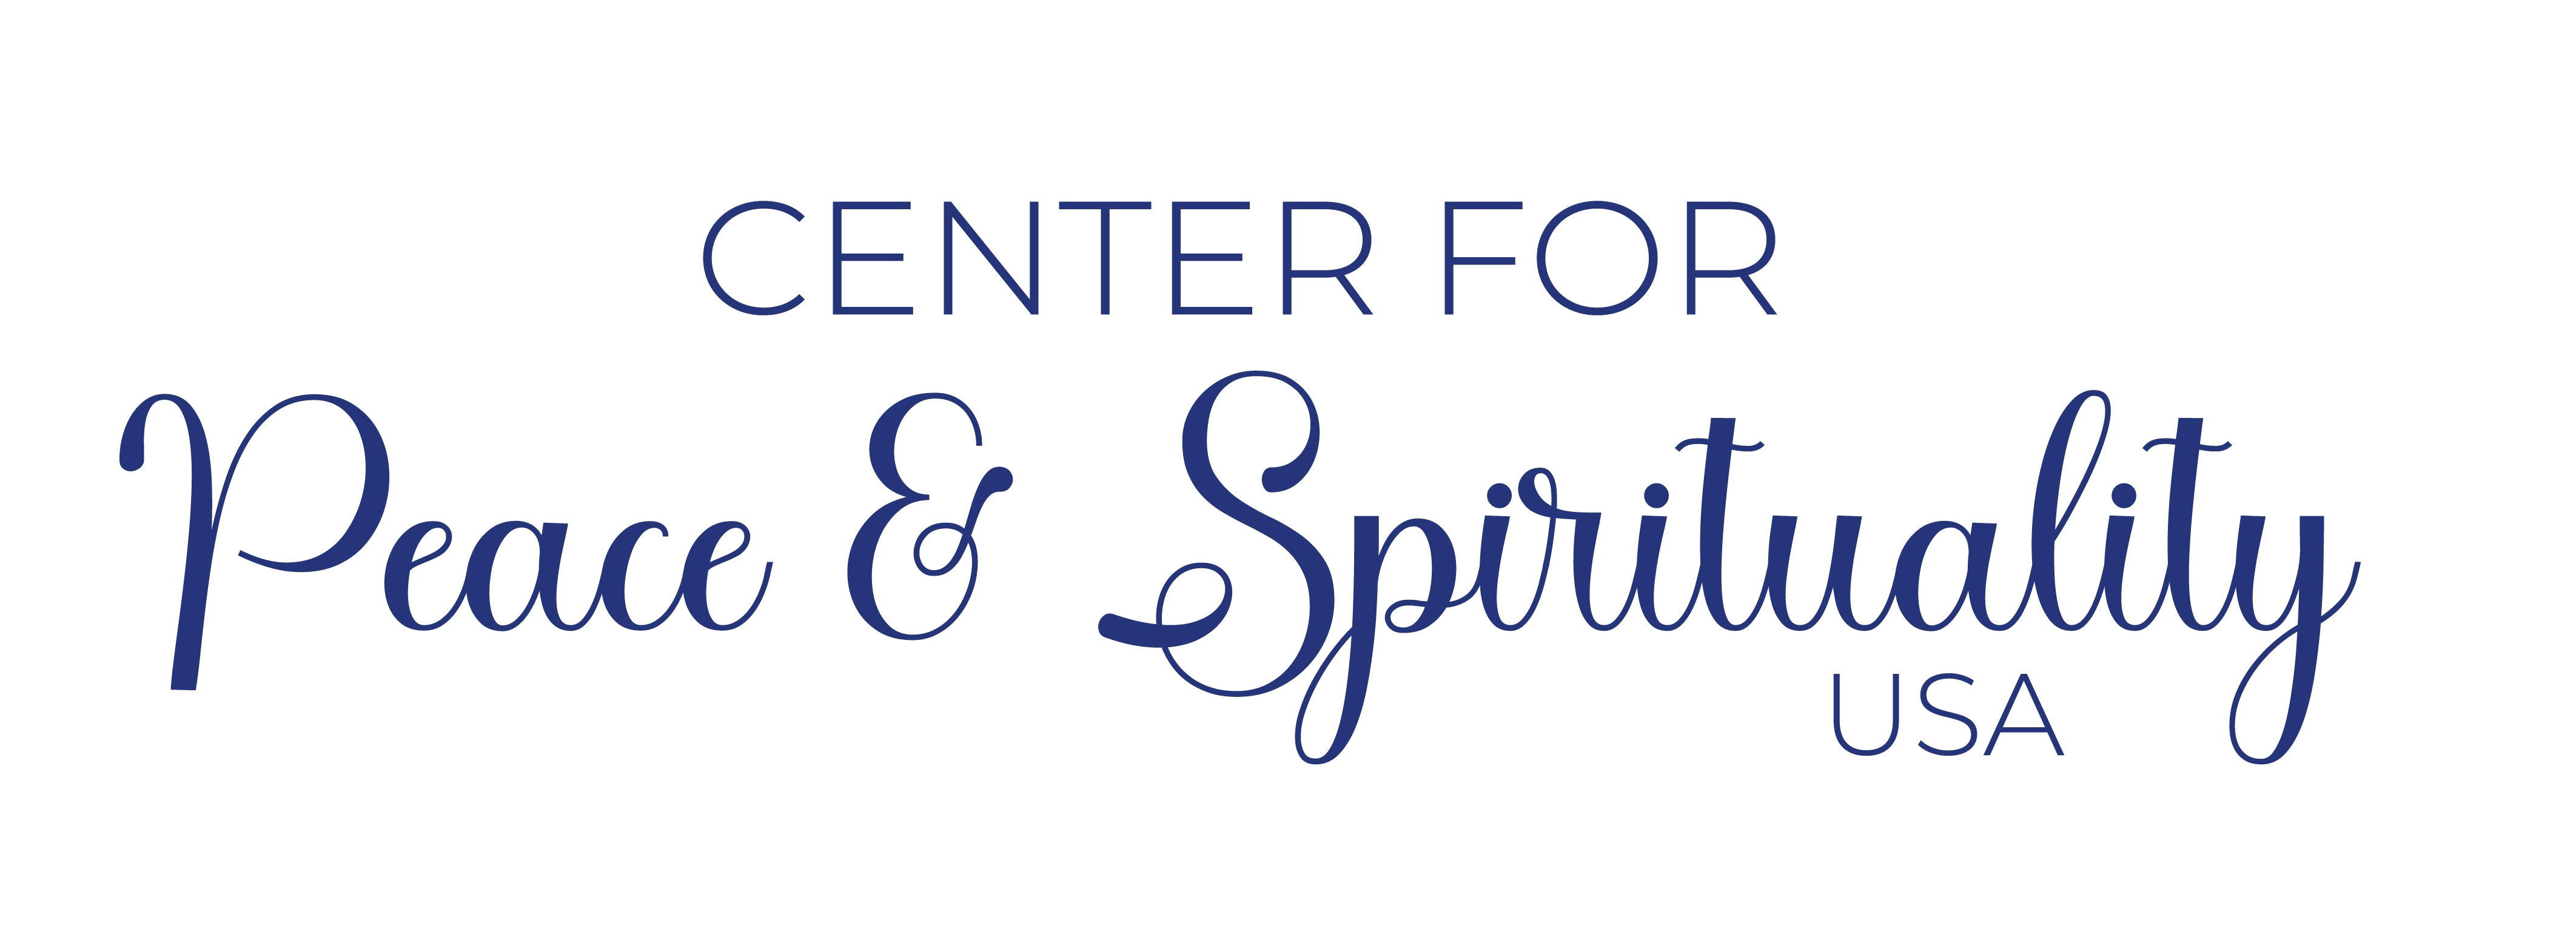 Center for Peace and Spirituality USA logo